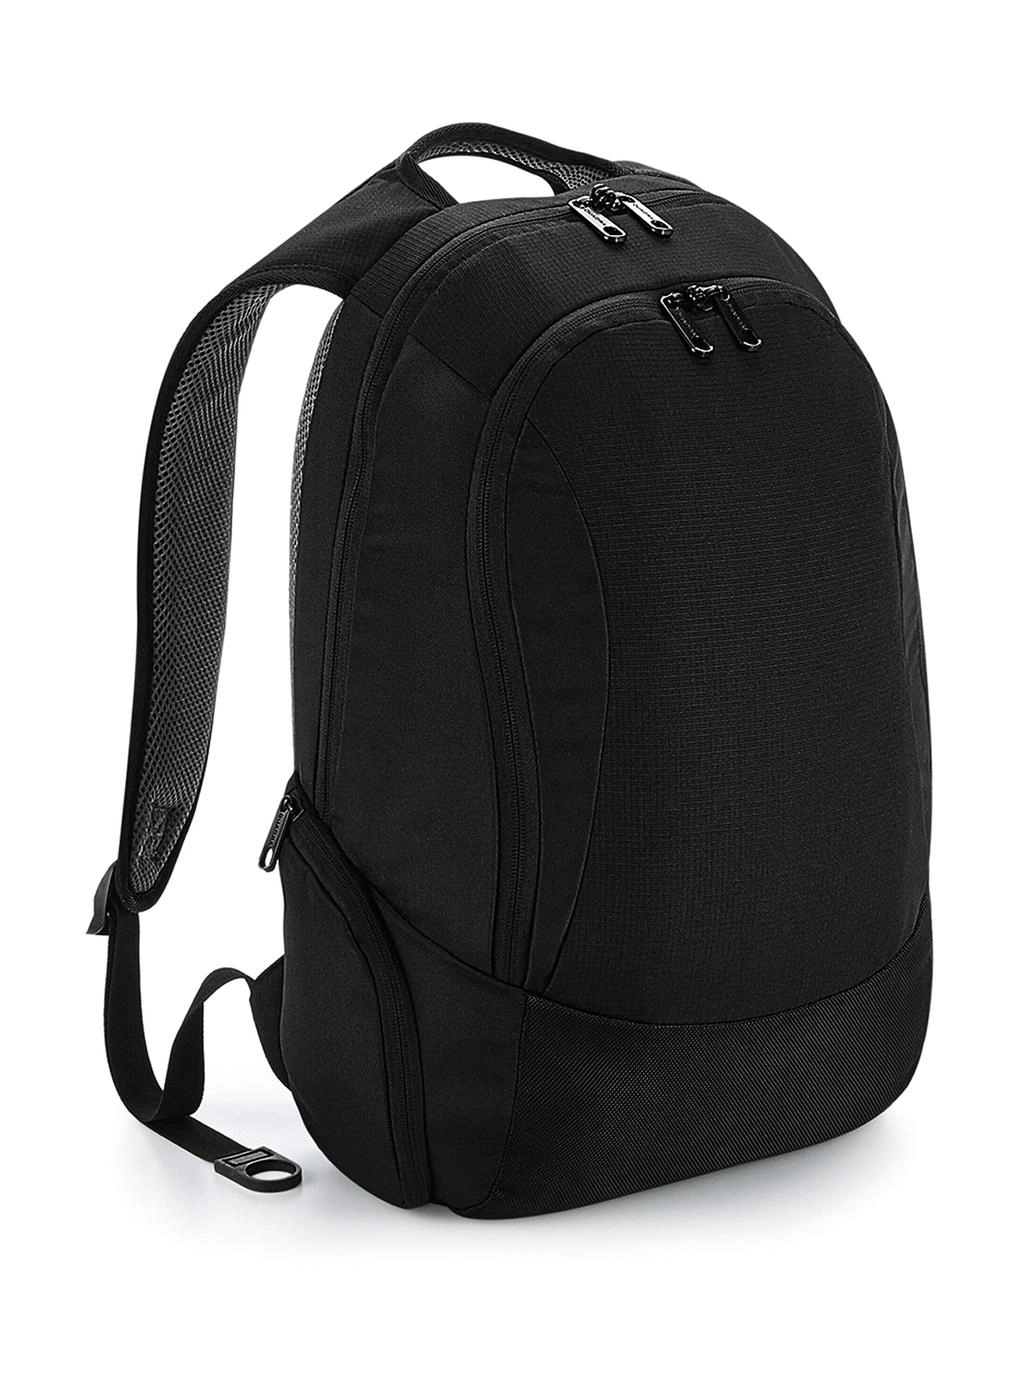 Vessel™ Slimline Laptop Backpack zum Besticken und Bedrucken in der Farbe Black mit Ihren Logo, Schriftzug oder Motiv.